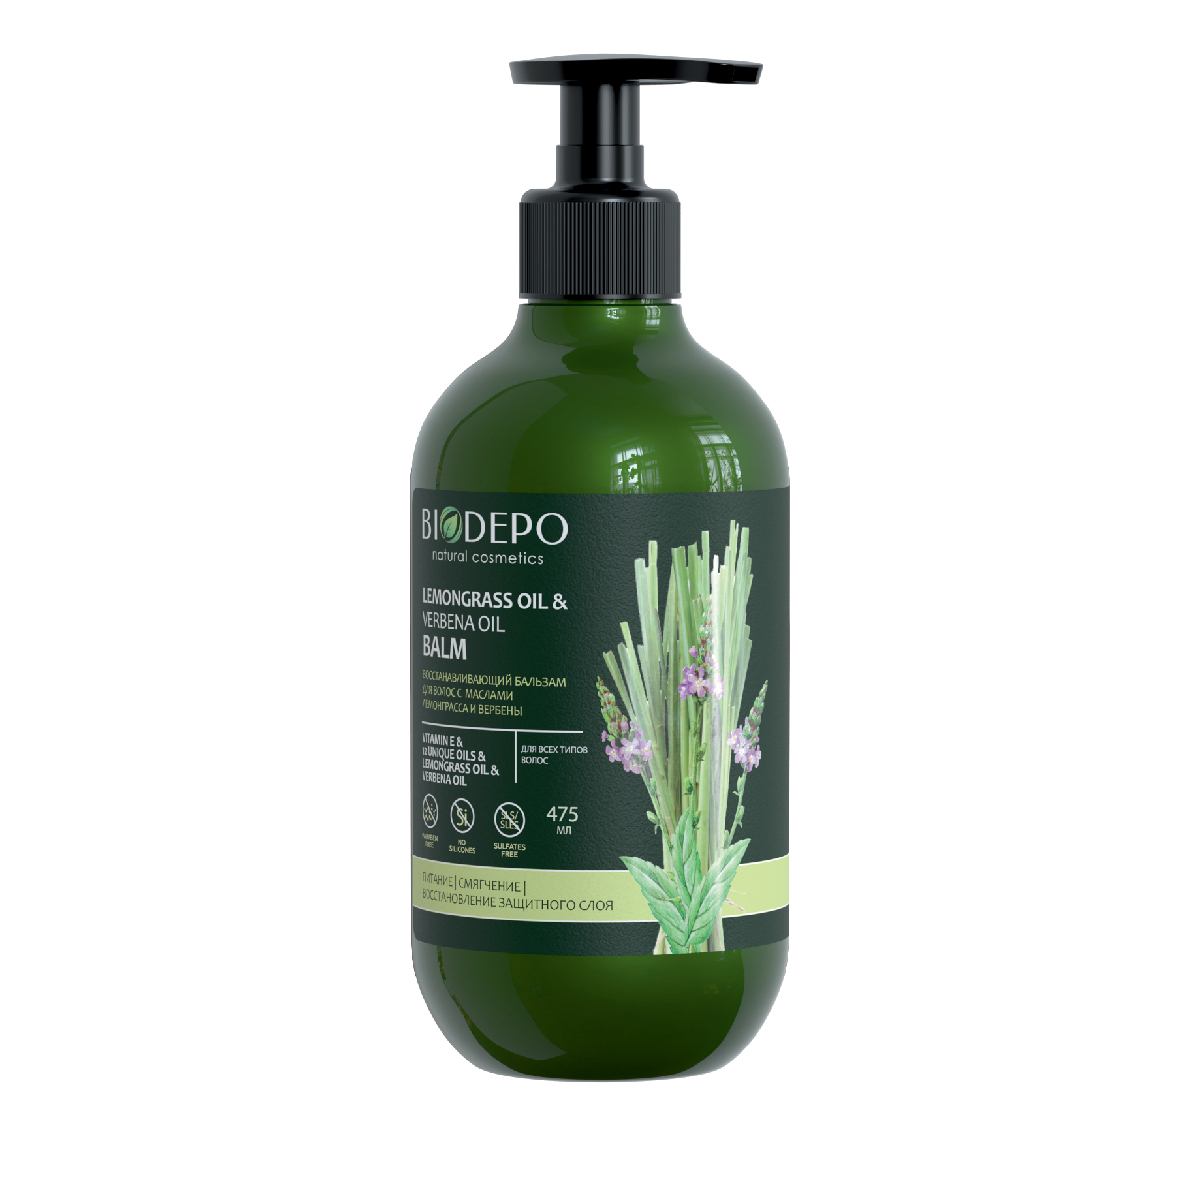 Бальзам Biodepo восстанавливающий для волос с маслами лемонграсса и вербены, 475 мл бальзам для волос biodepo бальзам для волос восстанавливающий с маслами лемонграсса и вербены lemongrass and verbena oils